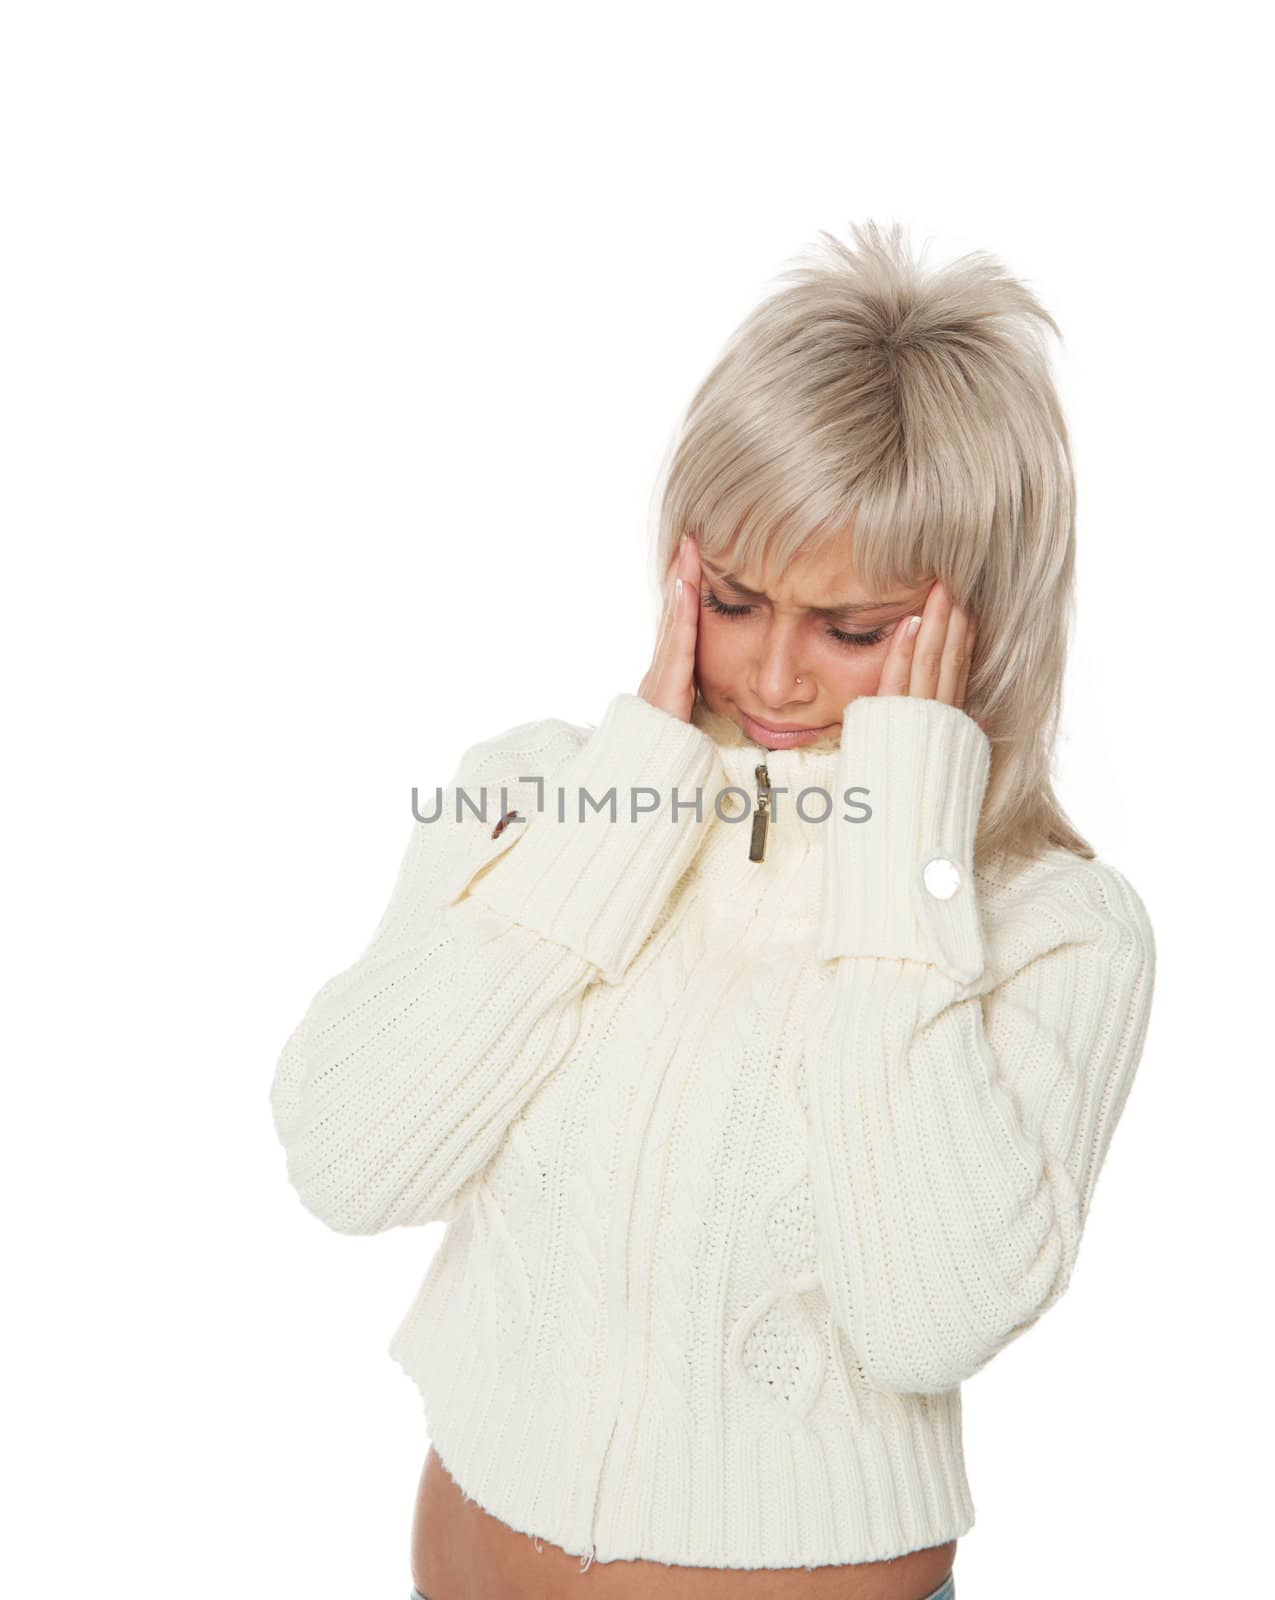 a woman in a white sweater headache